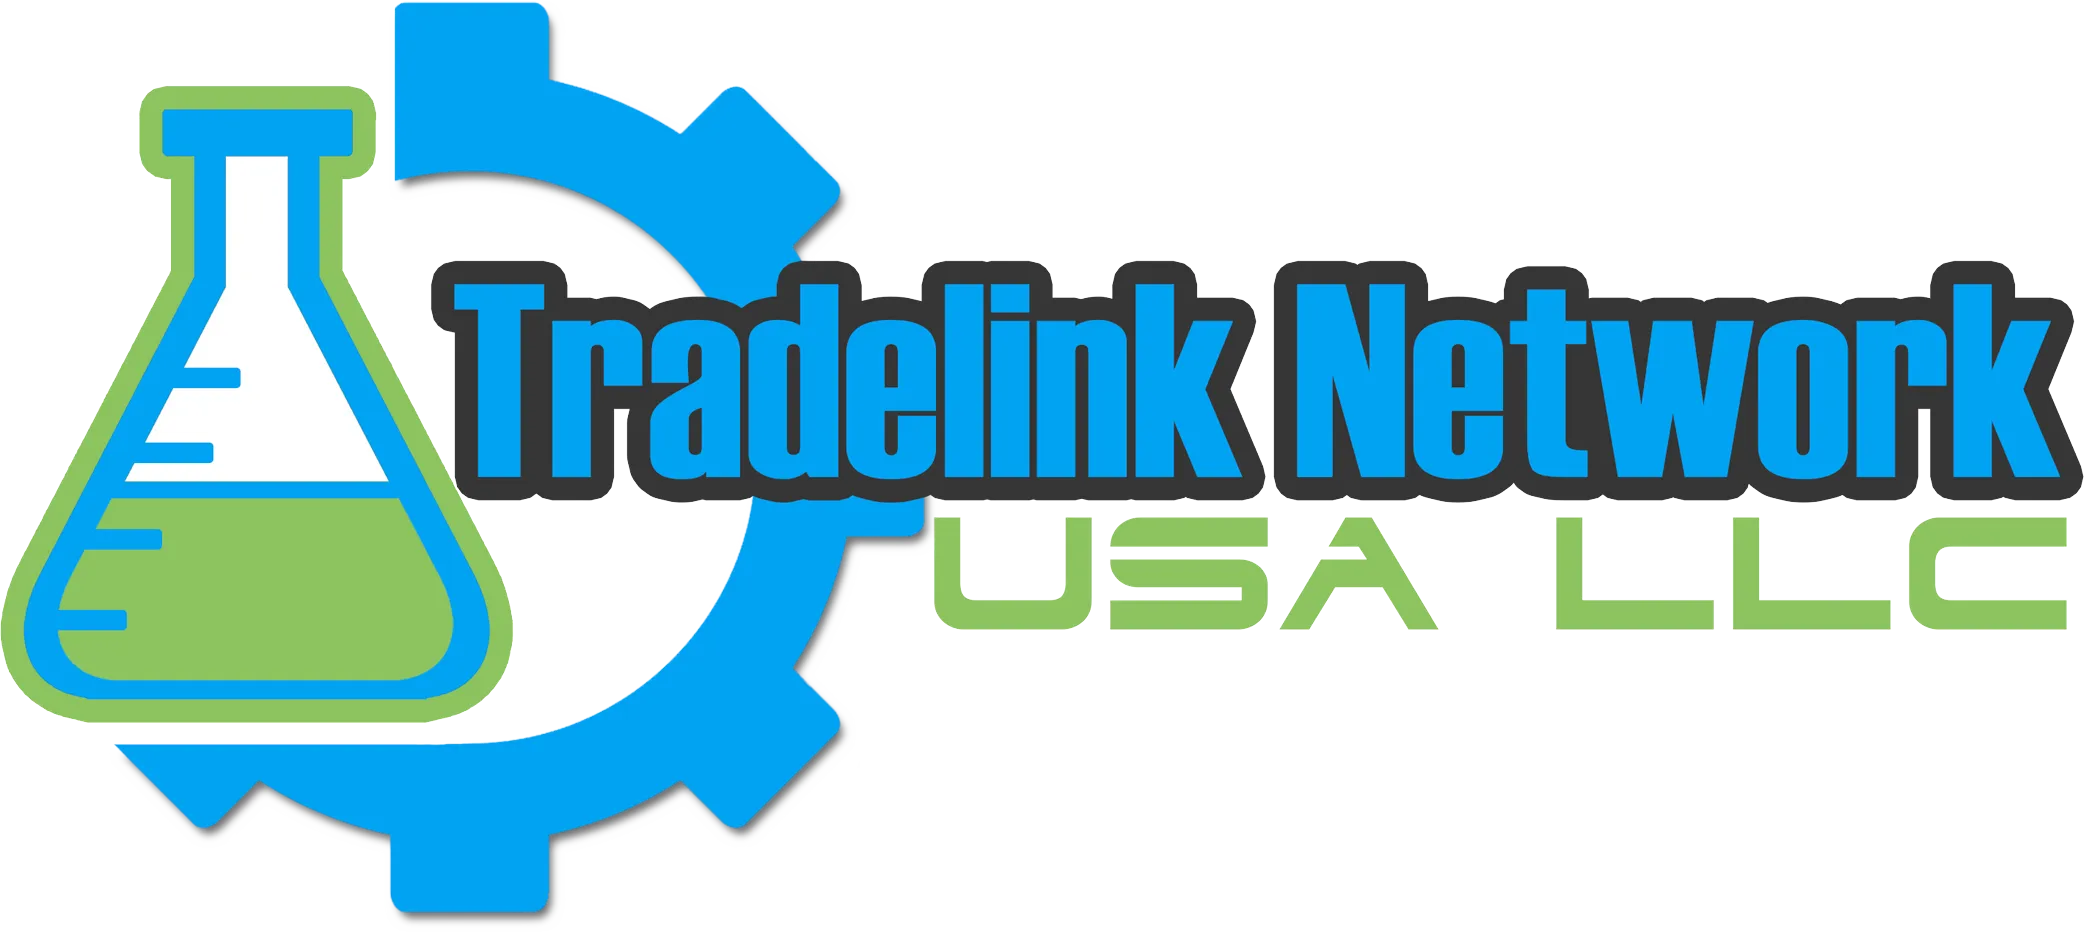 Tradelink Network